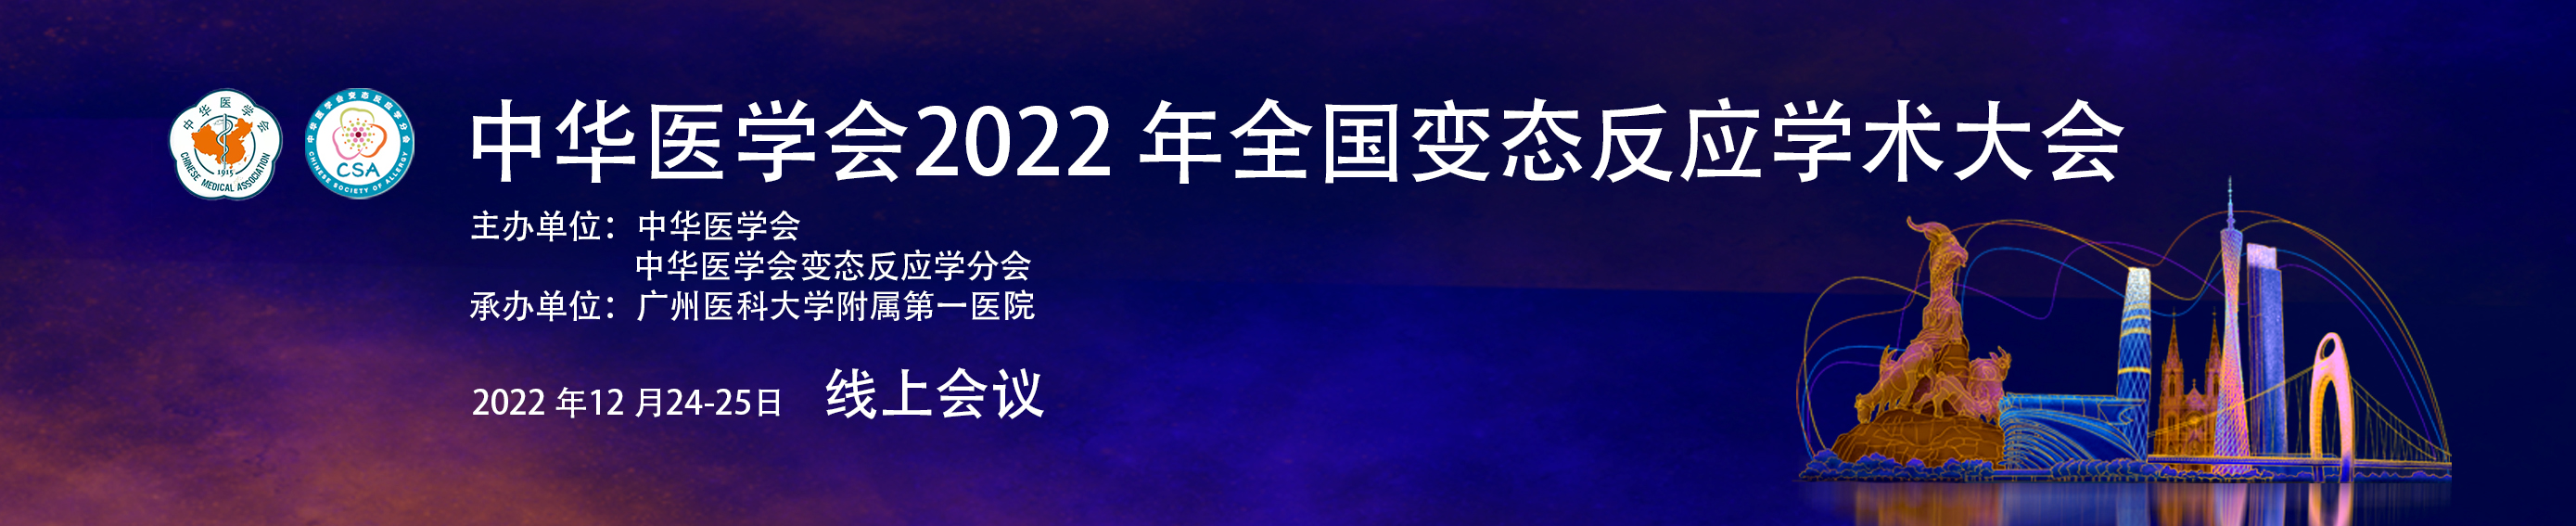 中华医学会2022年全国变态反应学术会议